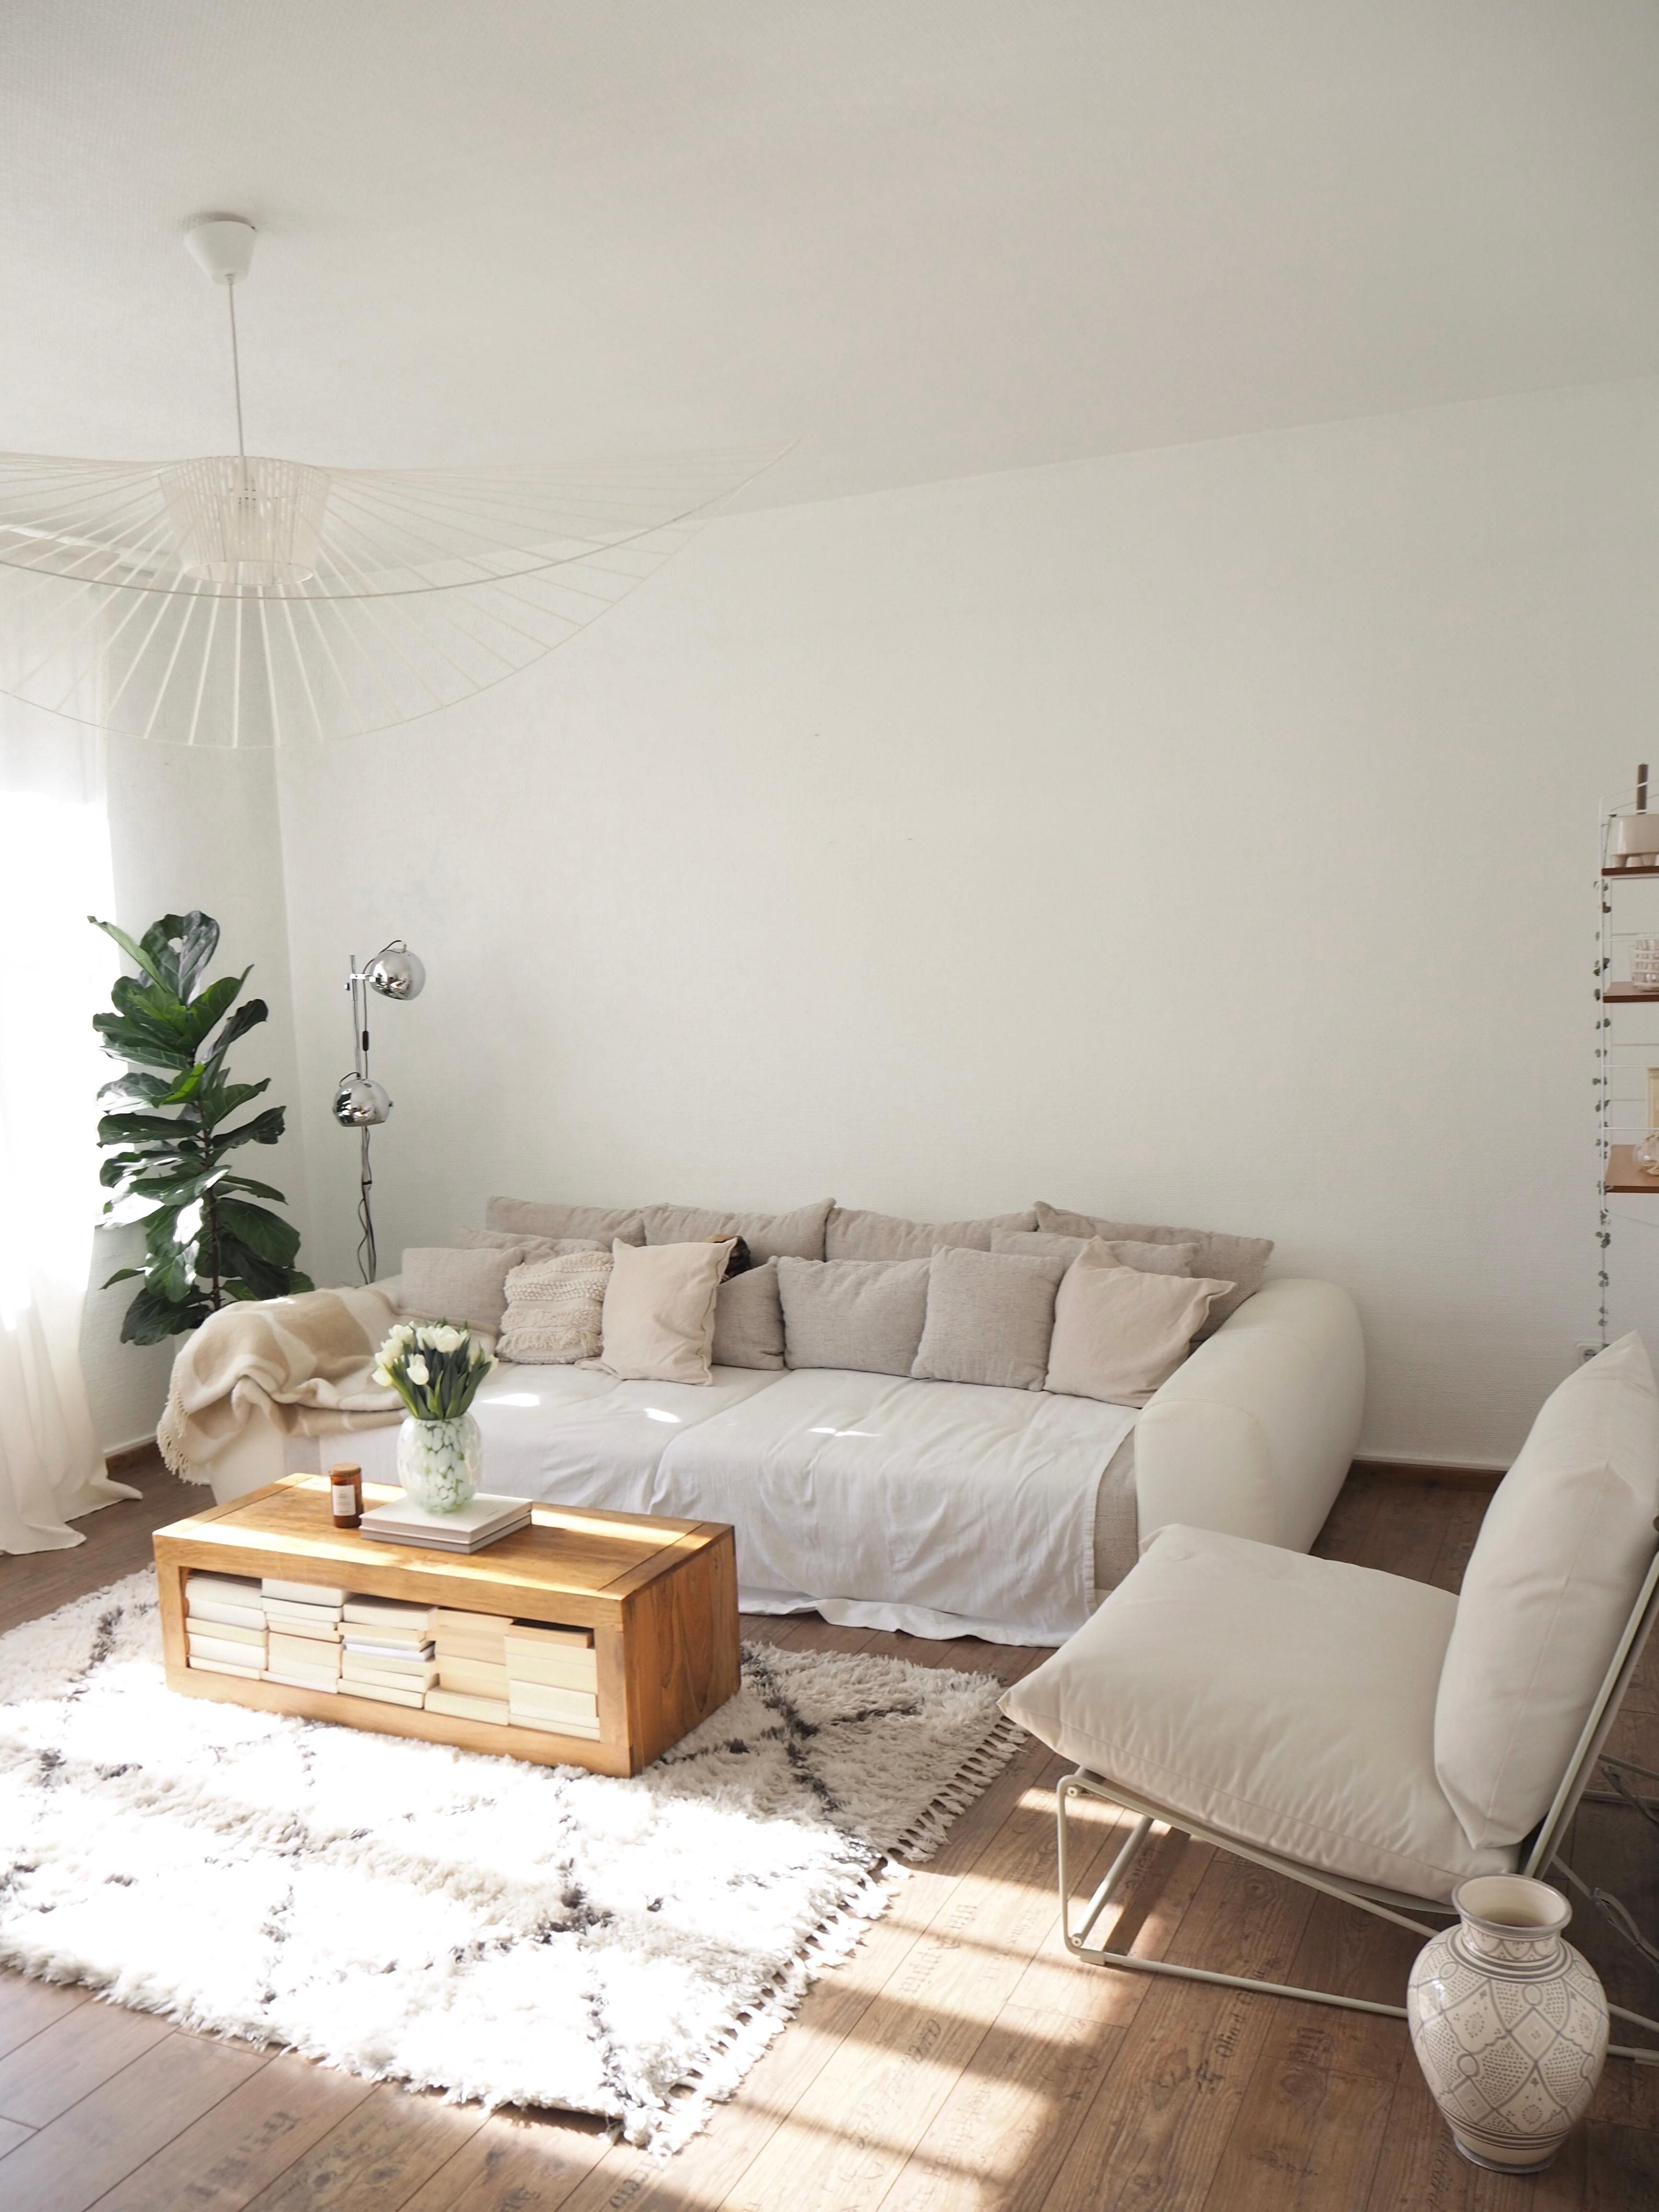 Sunny side #wohnzimmer #wohnbereich #couchtisch #sofa #beige #deckenlampe #petitefriture #ikea #tinekhome #pflanzen